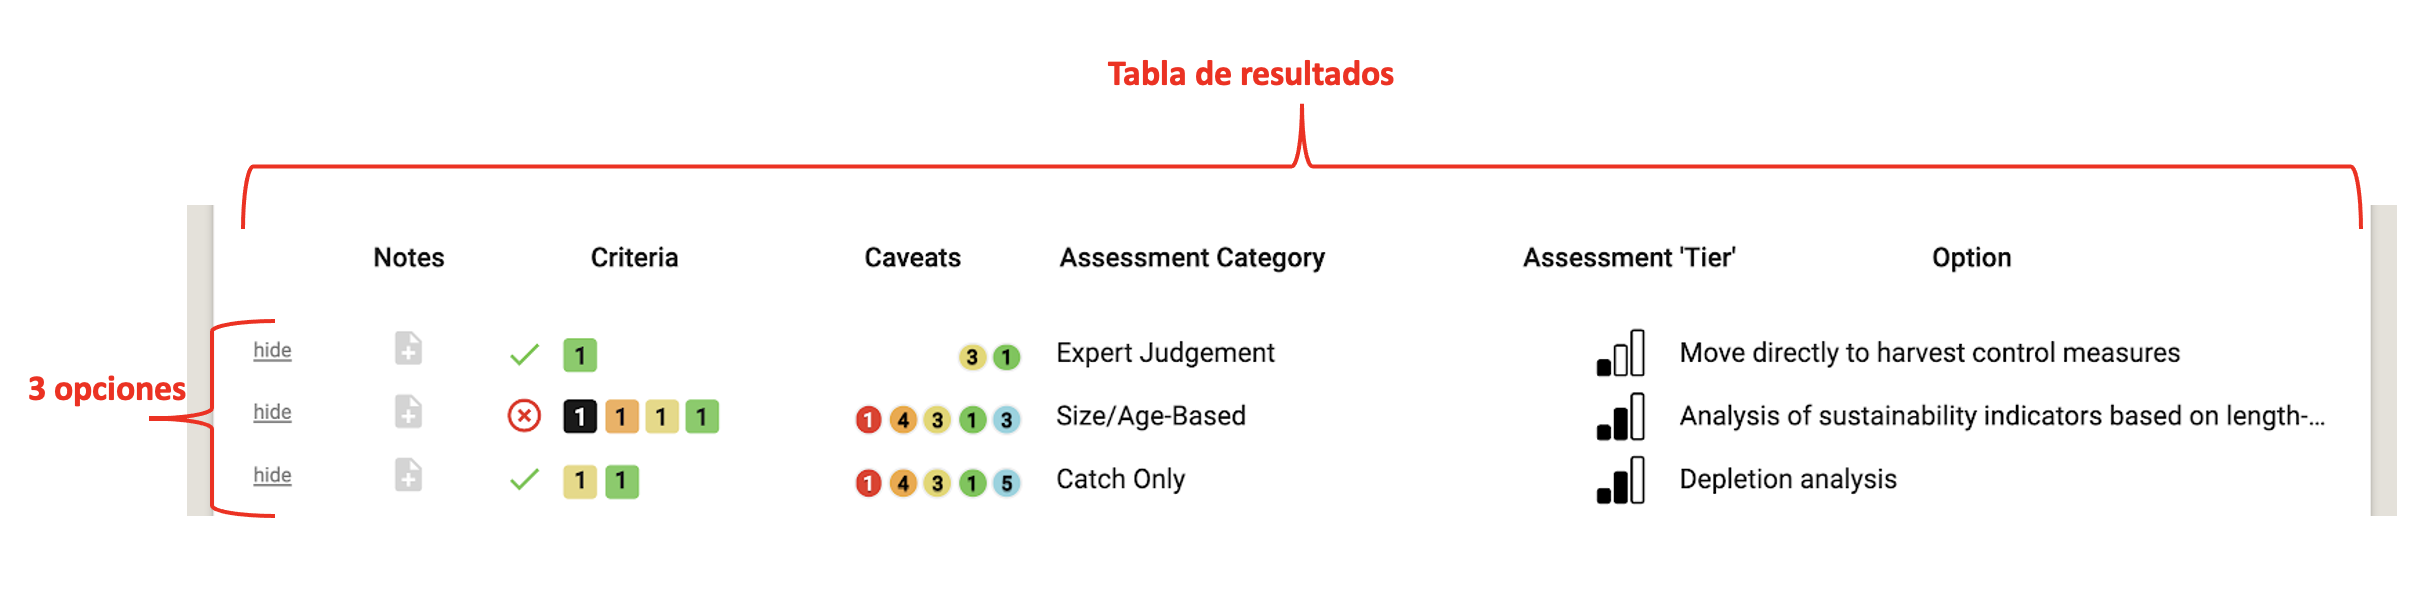 Ejemplo de la tabla de resultados de la herramienta FishPath y 3 opciones (3 filas). Esta es la sección de evaluación.